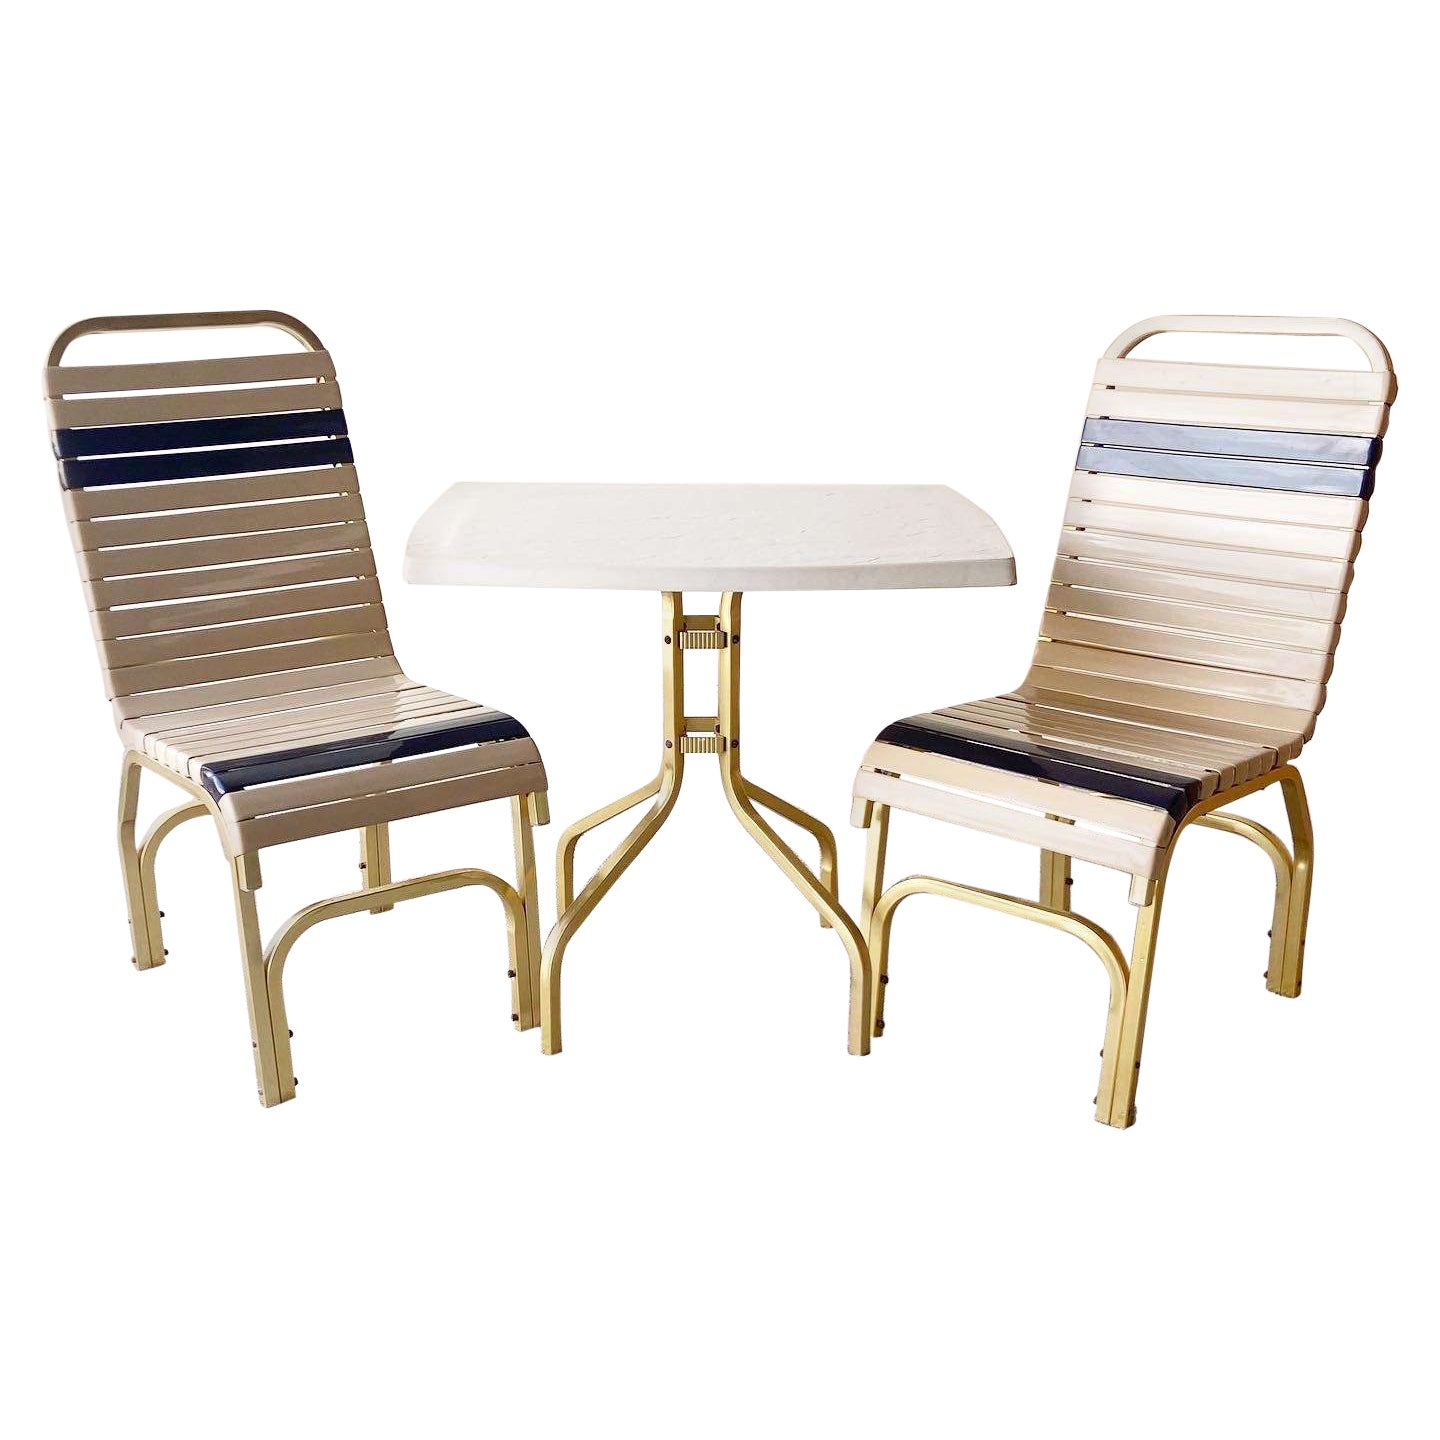 Miami Gold Beige & Blau Metall Poolside Stühle und Tisch - 3 Pieces im Angebot